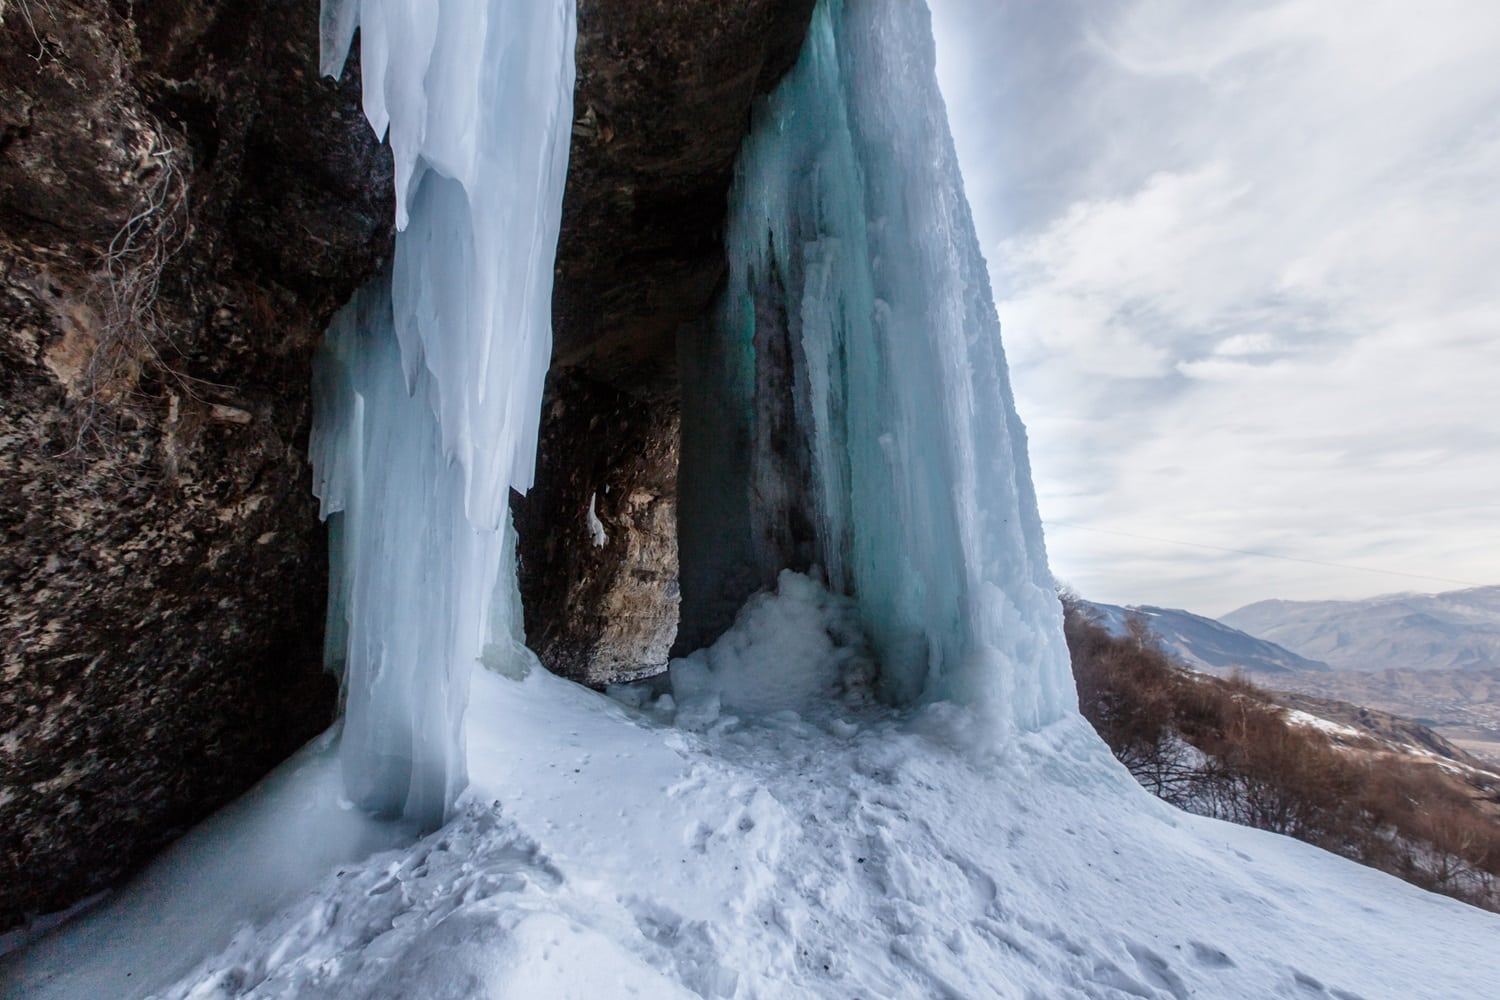 A frozen waterfall in Dagestan.